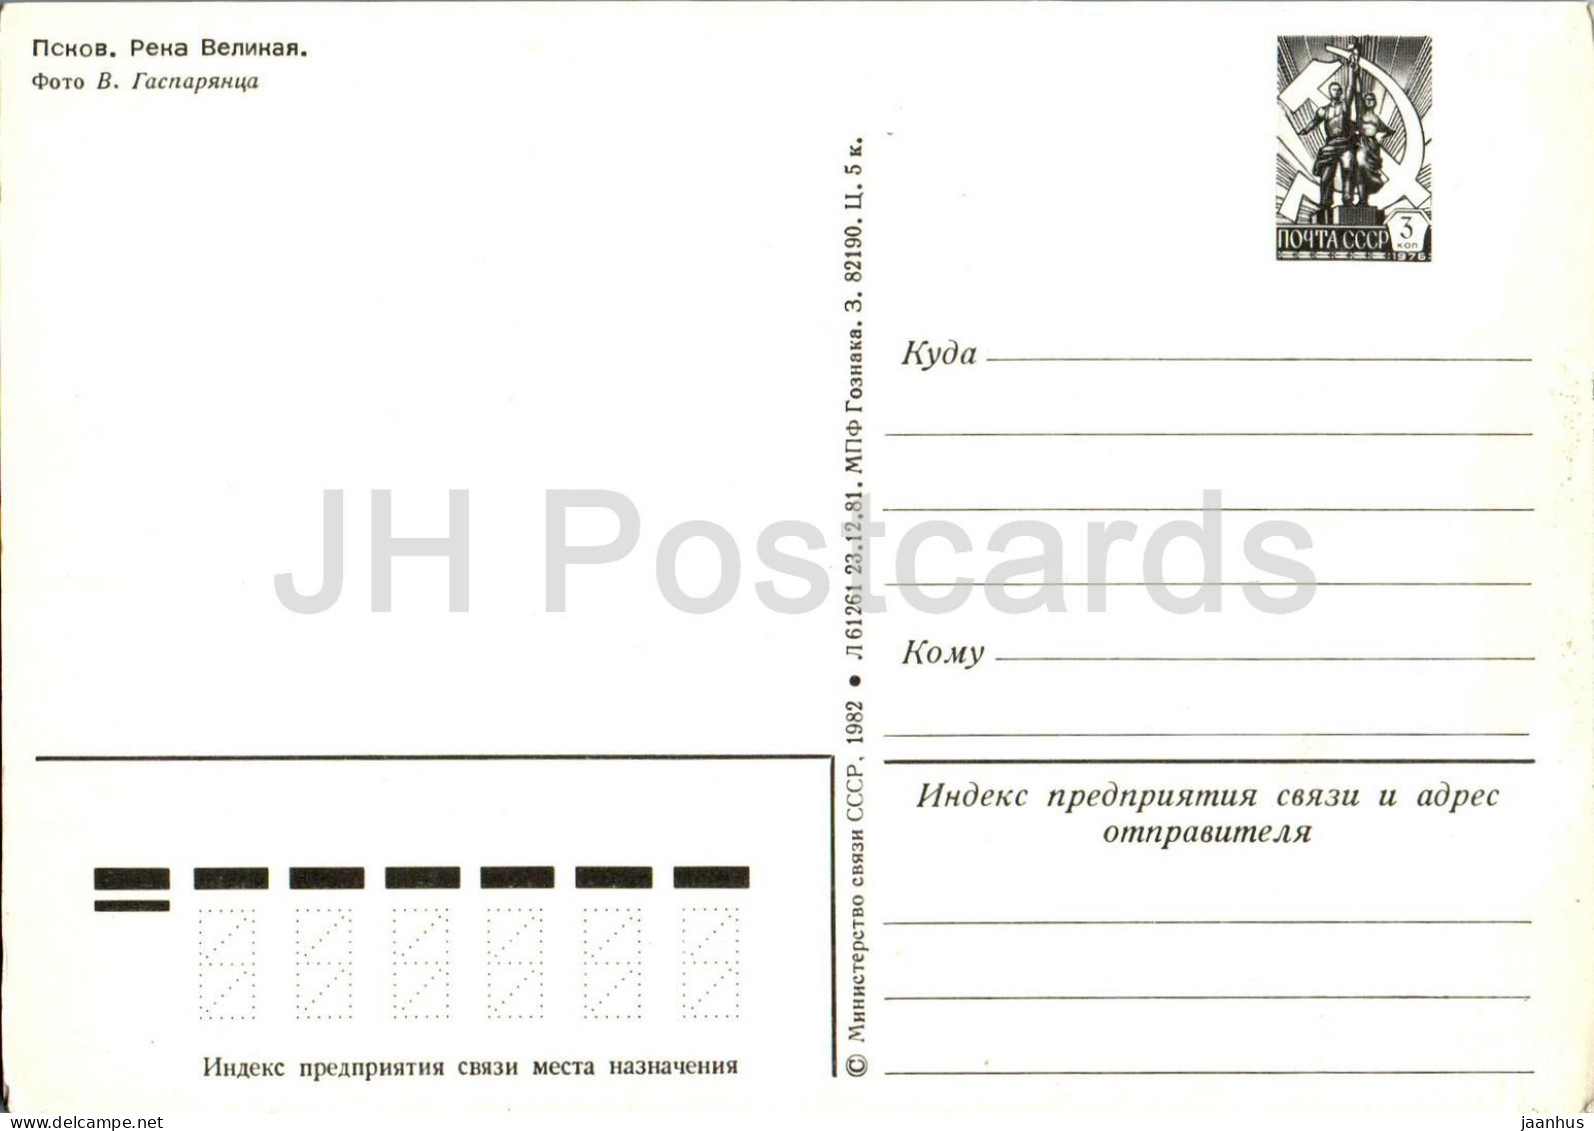 Pskov - Velikaya River - Postal Stationery - 1982 - Russia USSR - Unused - Rusland